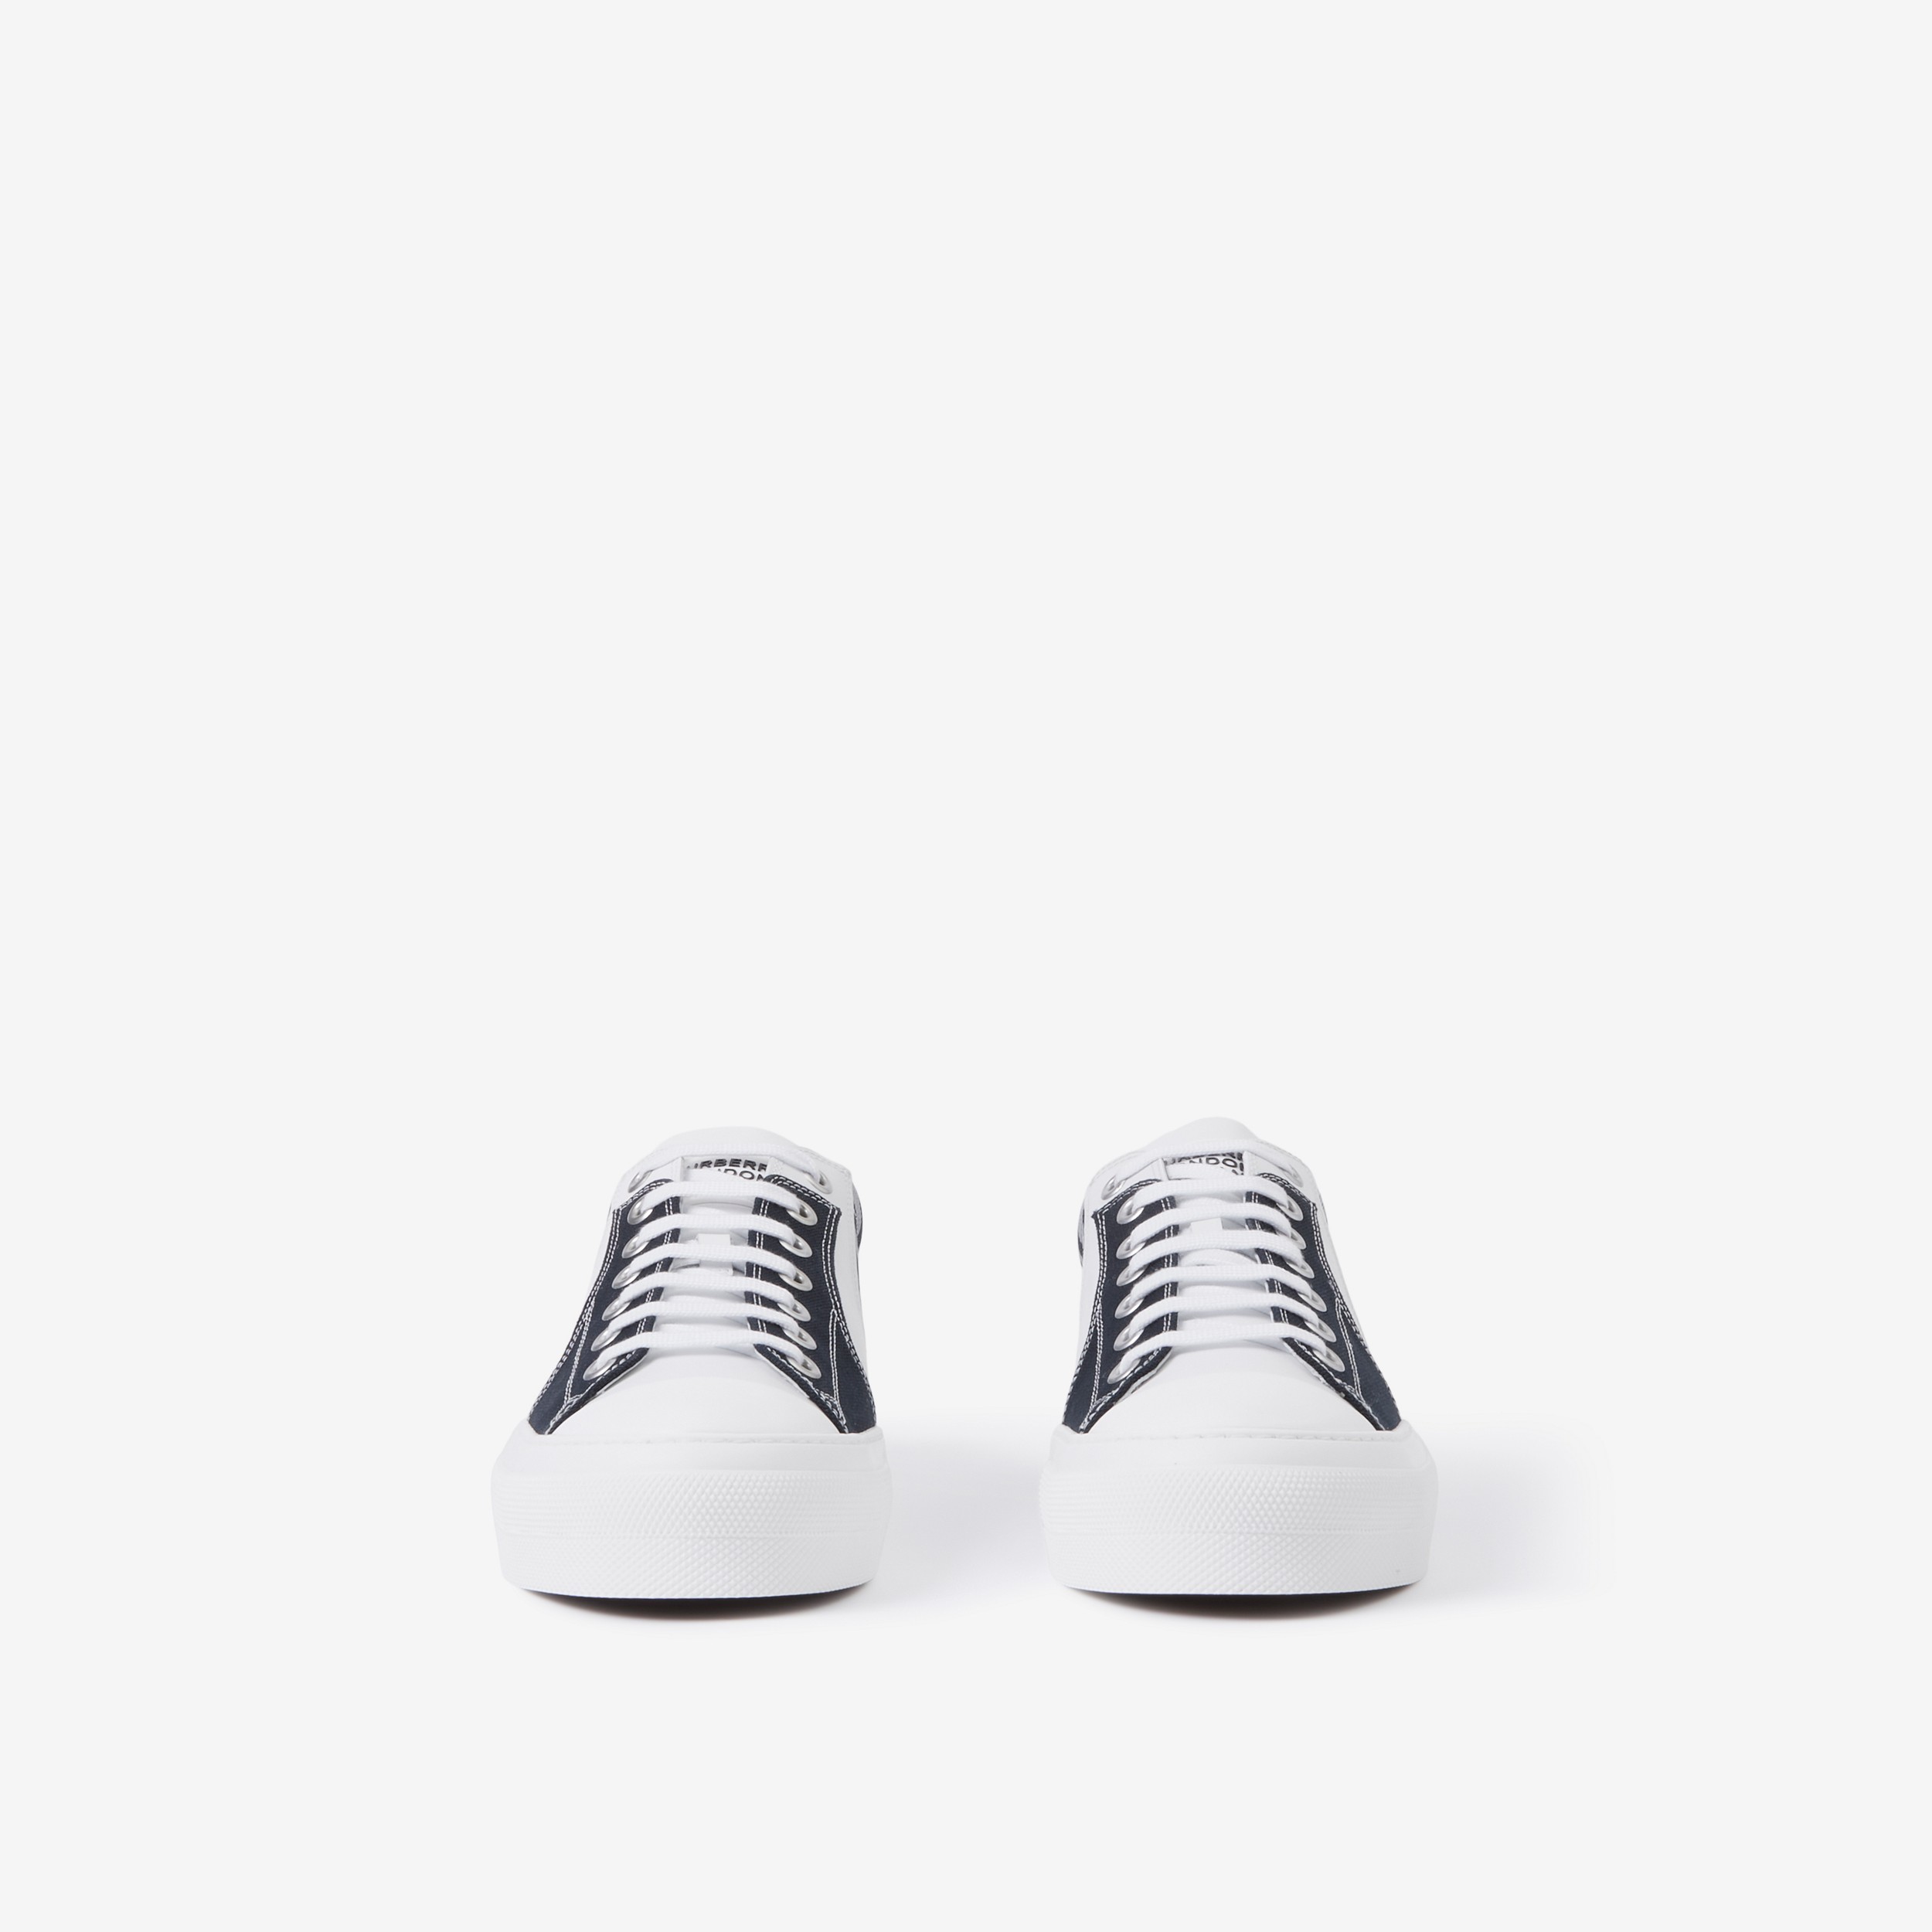 Sneaker in pelle, cotone e Check (Bianco/navy) - Uomo | Sito ufficiale Burberry® - 2